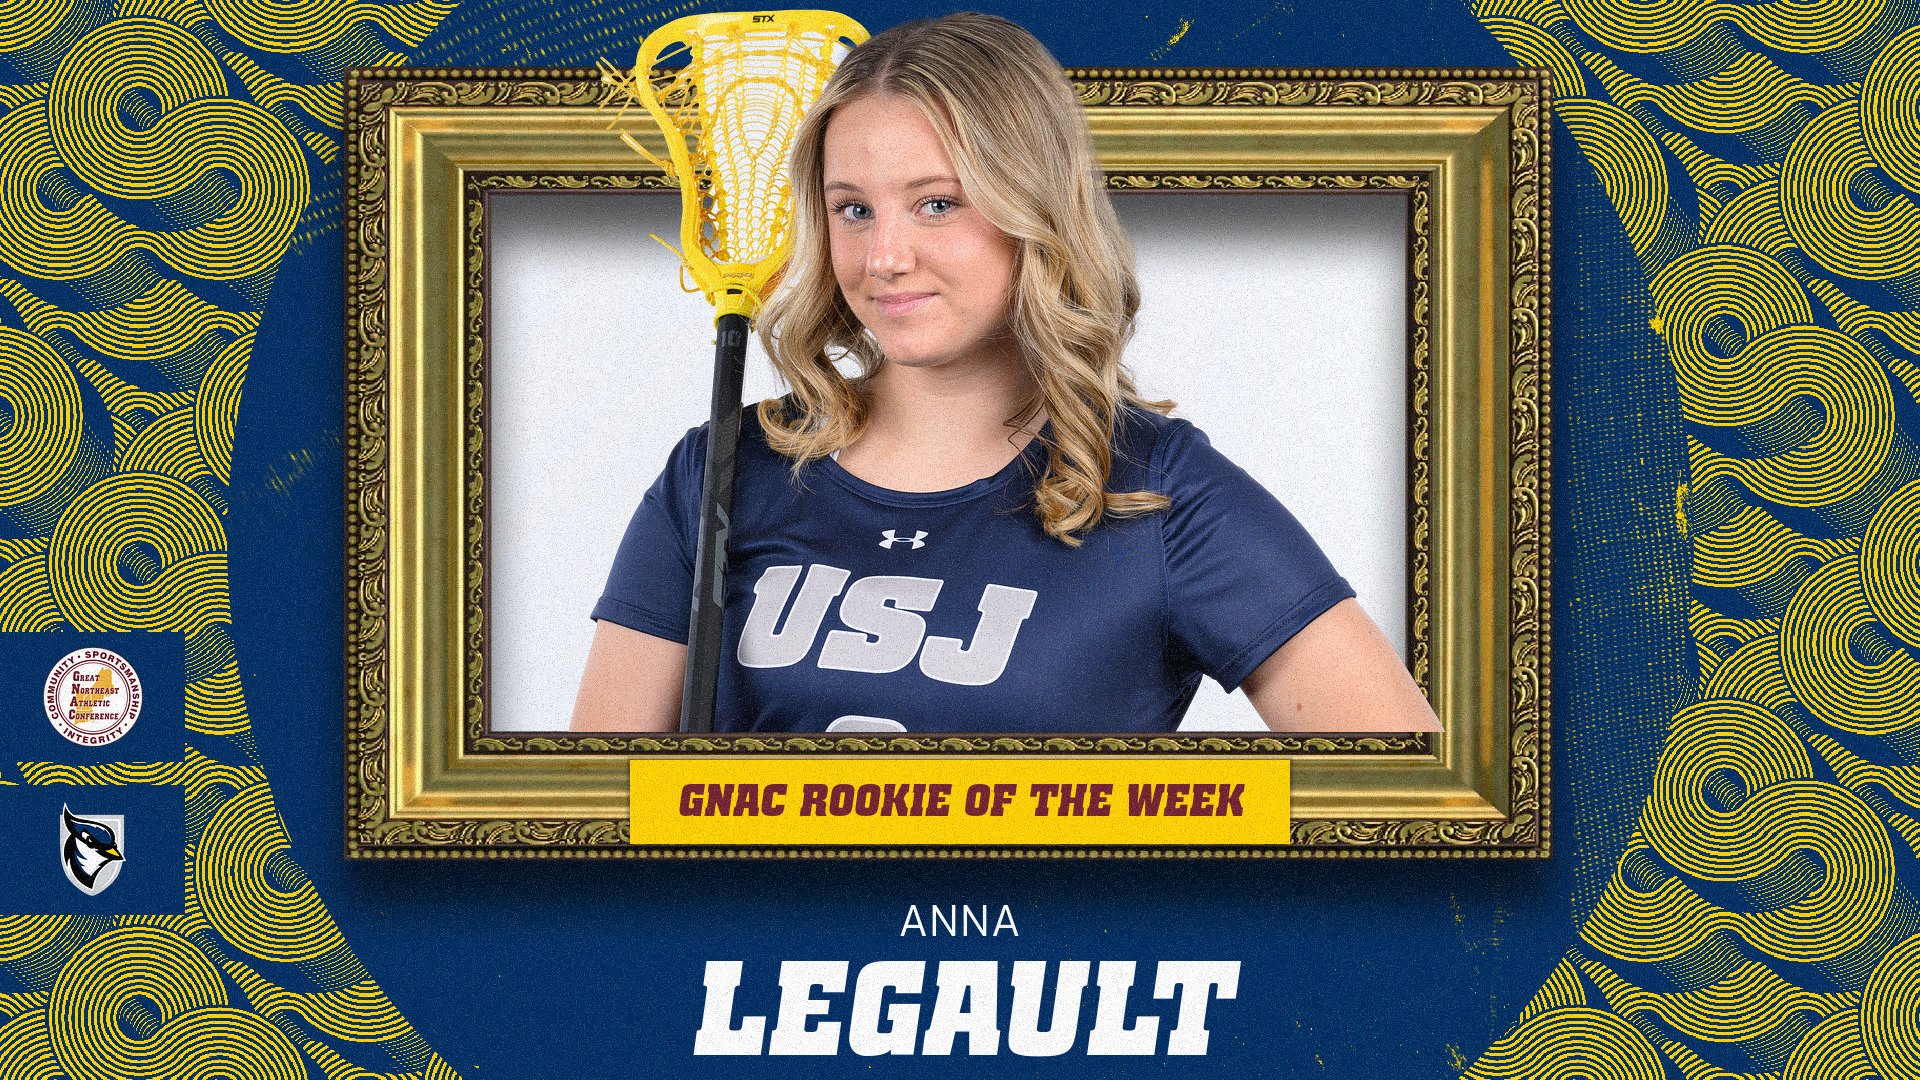 LeGault Tabbed GNAC Women's Lacrosse Rookie of the Week